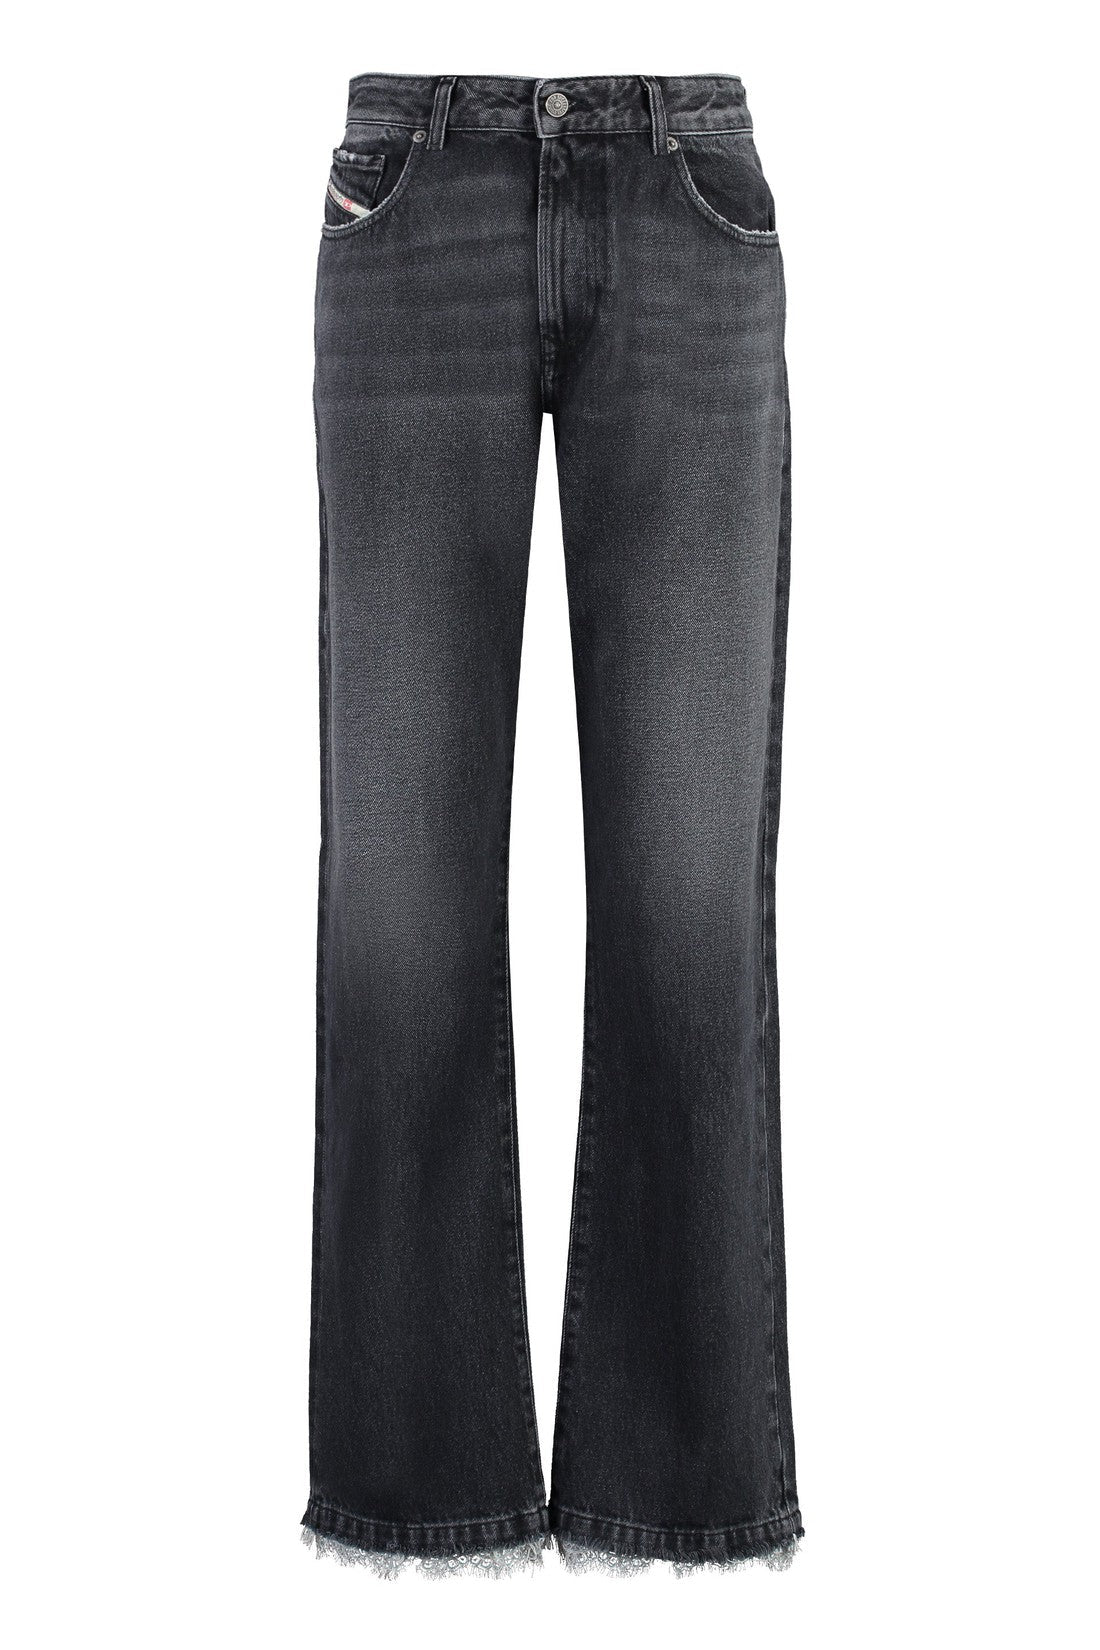 DIESEL-OUTLET-SALE-1999 D-Reggy 5-pocket straight-leg jeans-ARCHIVIST